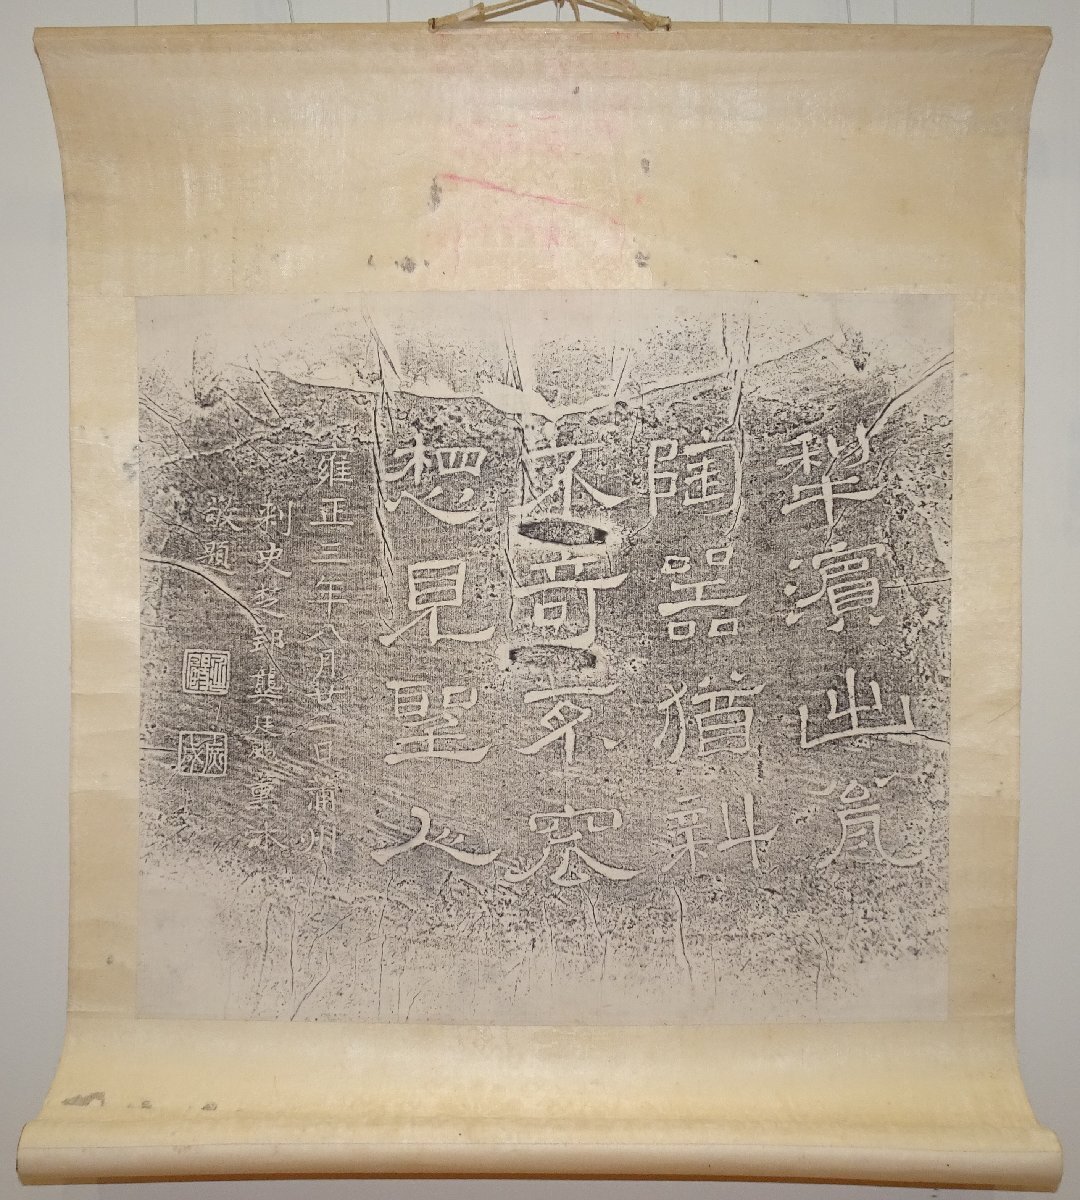 Rarebookkyoto 1FB-681 Китайская каллиграфия и живопись Нашихама, 3-й год обучения в Ёншо, Пушу, Рюготей растирание, чернила на бумаге, сделано около 1800 г., Киото антиквариат, рисование, Японская живопись, пейзаж, Фугецу